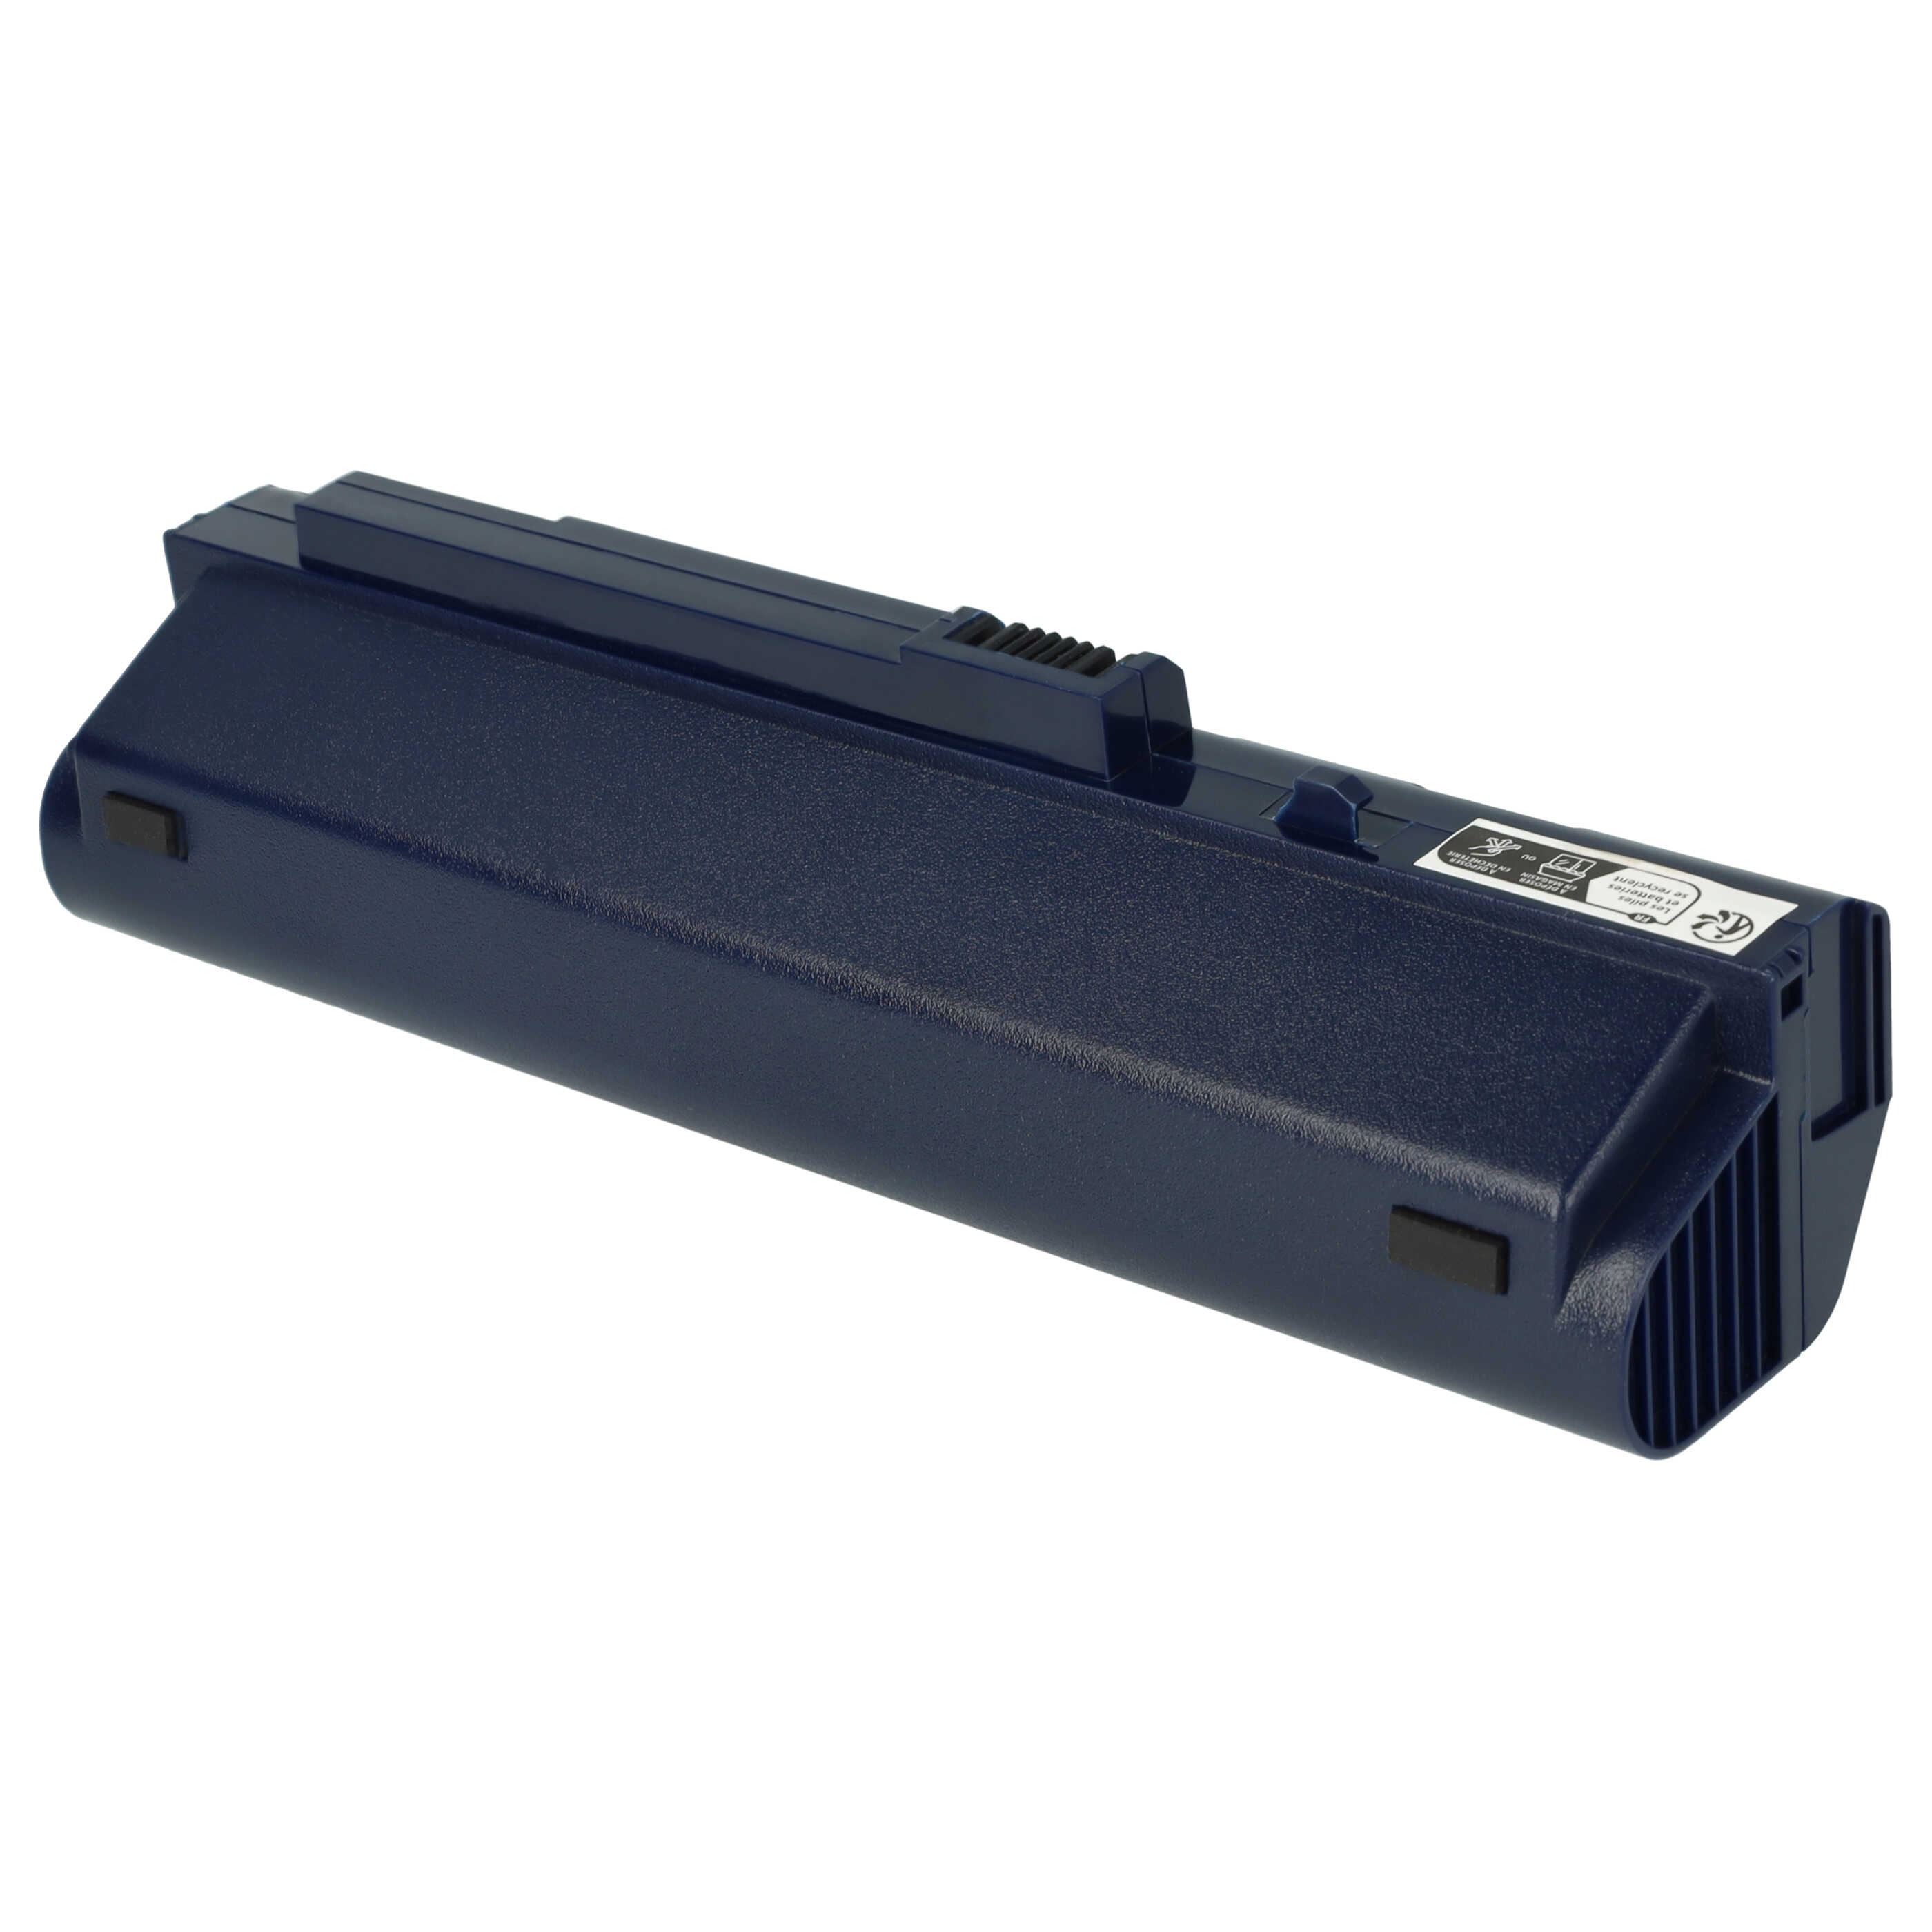 Akumulator do laptopa zamiennik Acer 934T2780F, BT.00605.035 - 6600 mAh 11,1 V Li-Ion, ciemnoniebieski